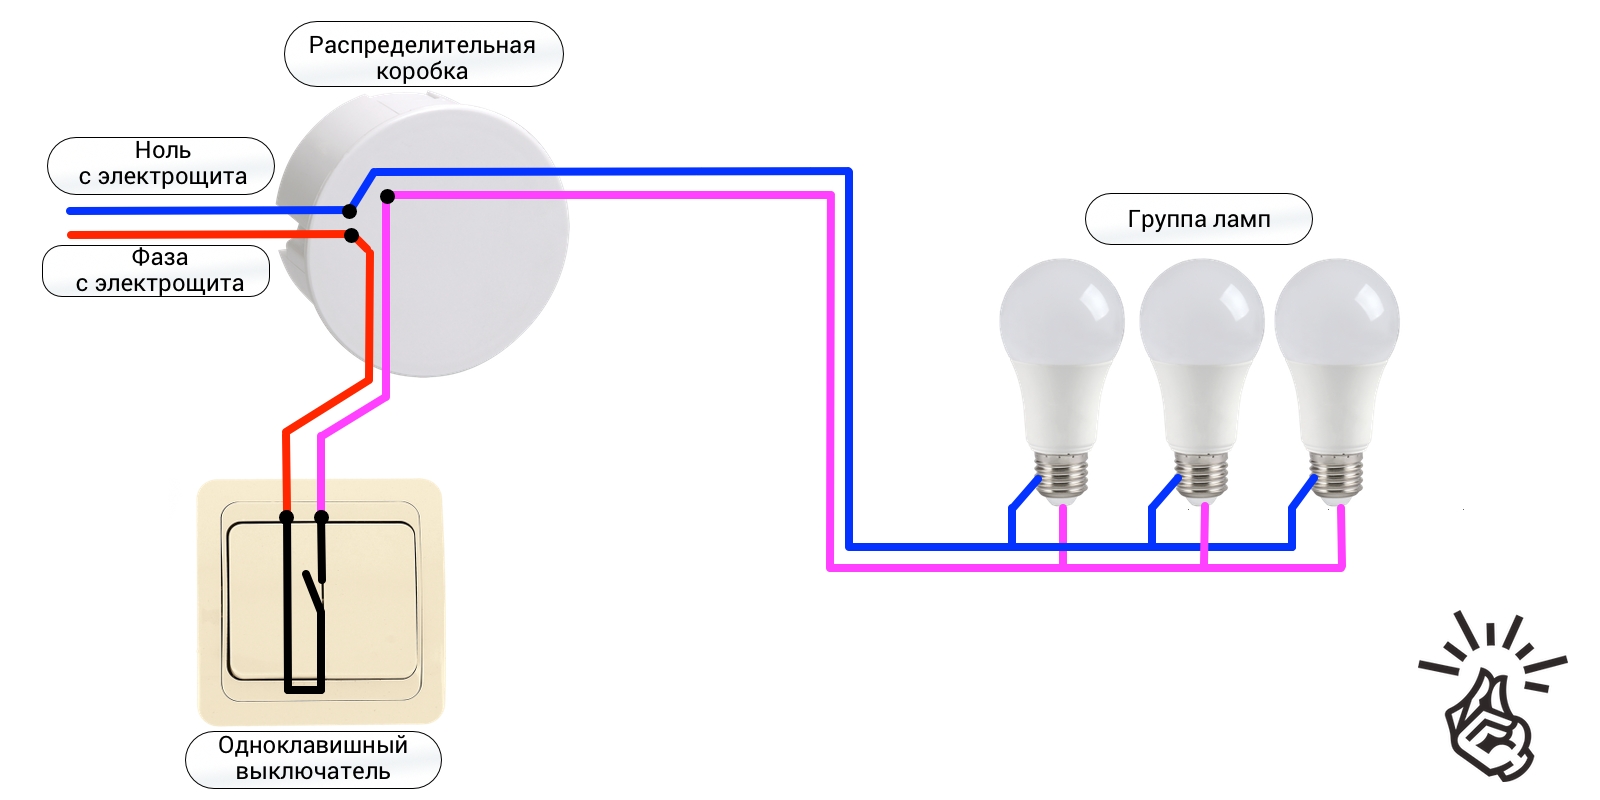 Пошаговая инструкция подключения одноклавишного выключателя